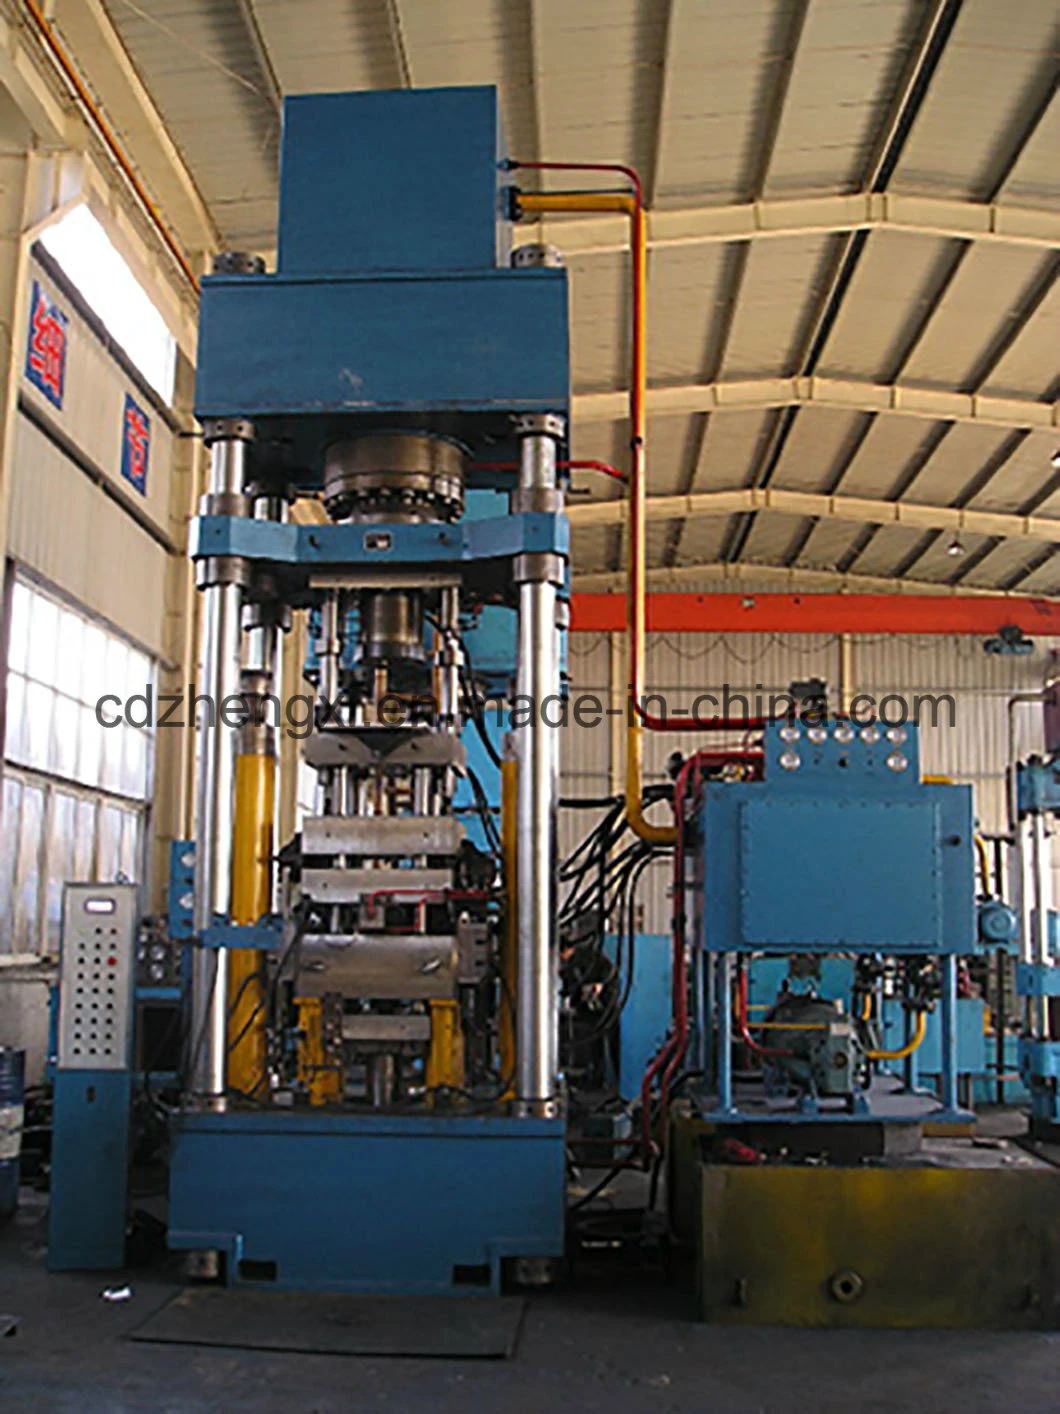 Hydraulic Press Hydraulic Press Machine for Hard Alloy and Metal Powder Forming